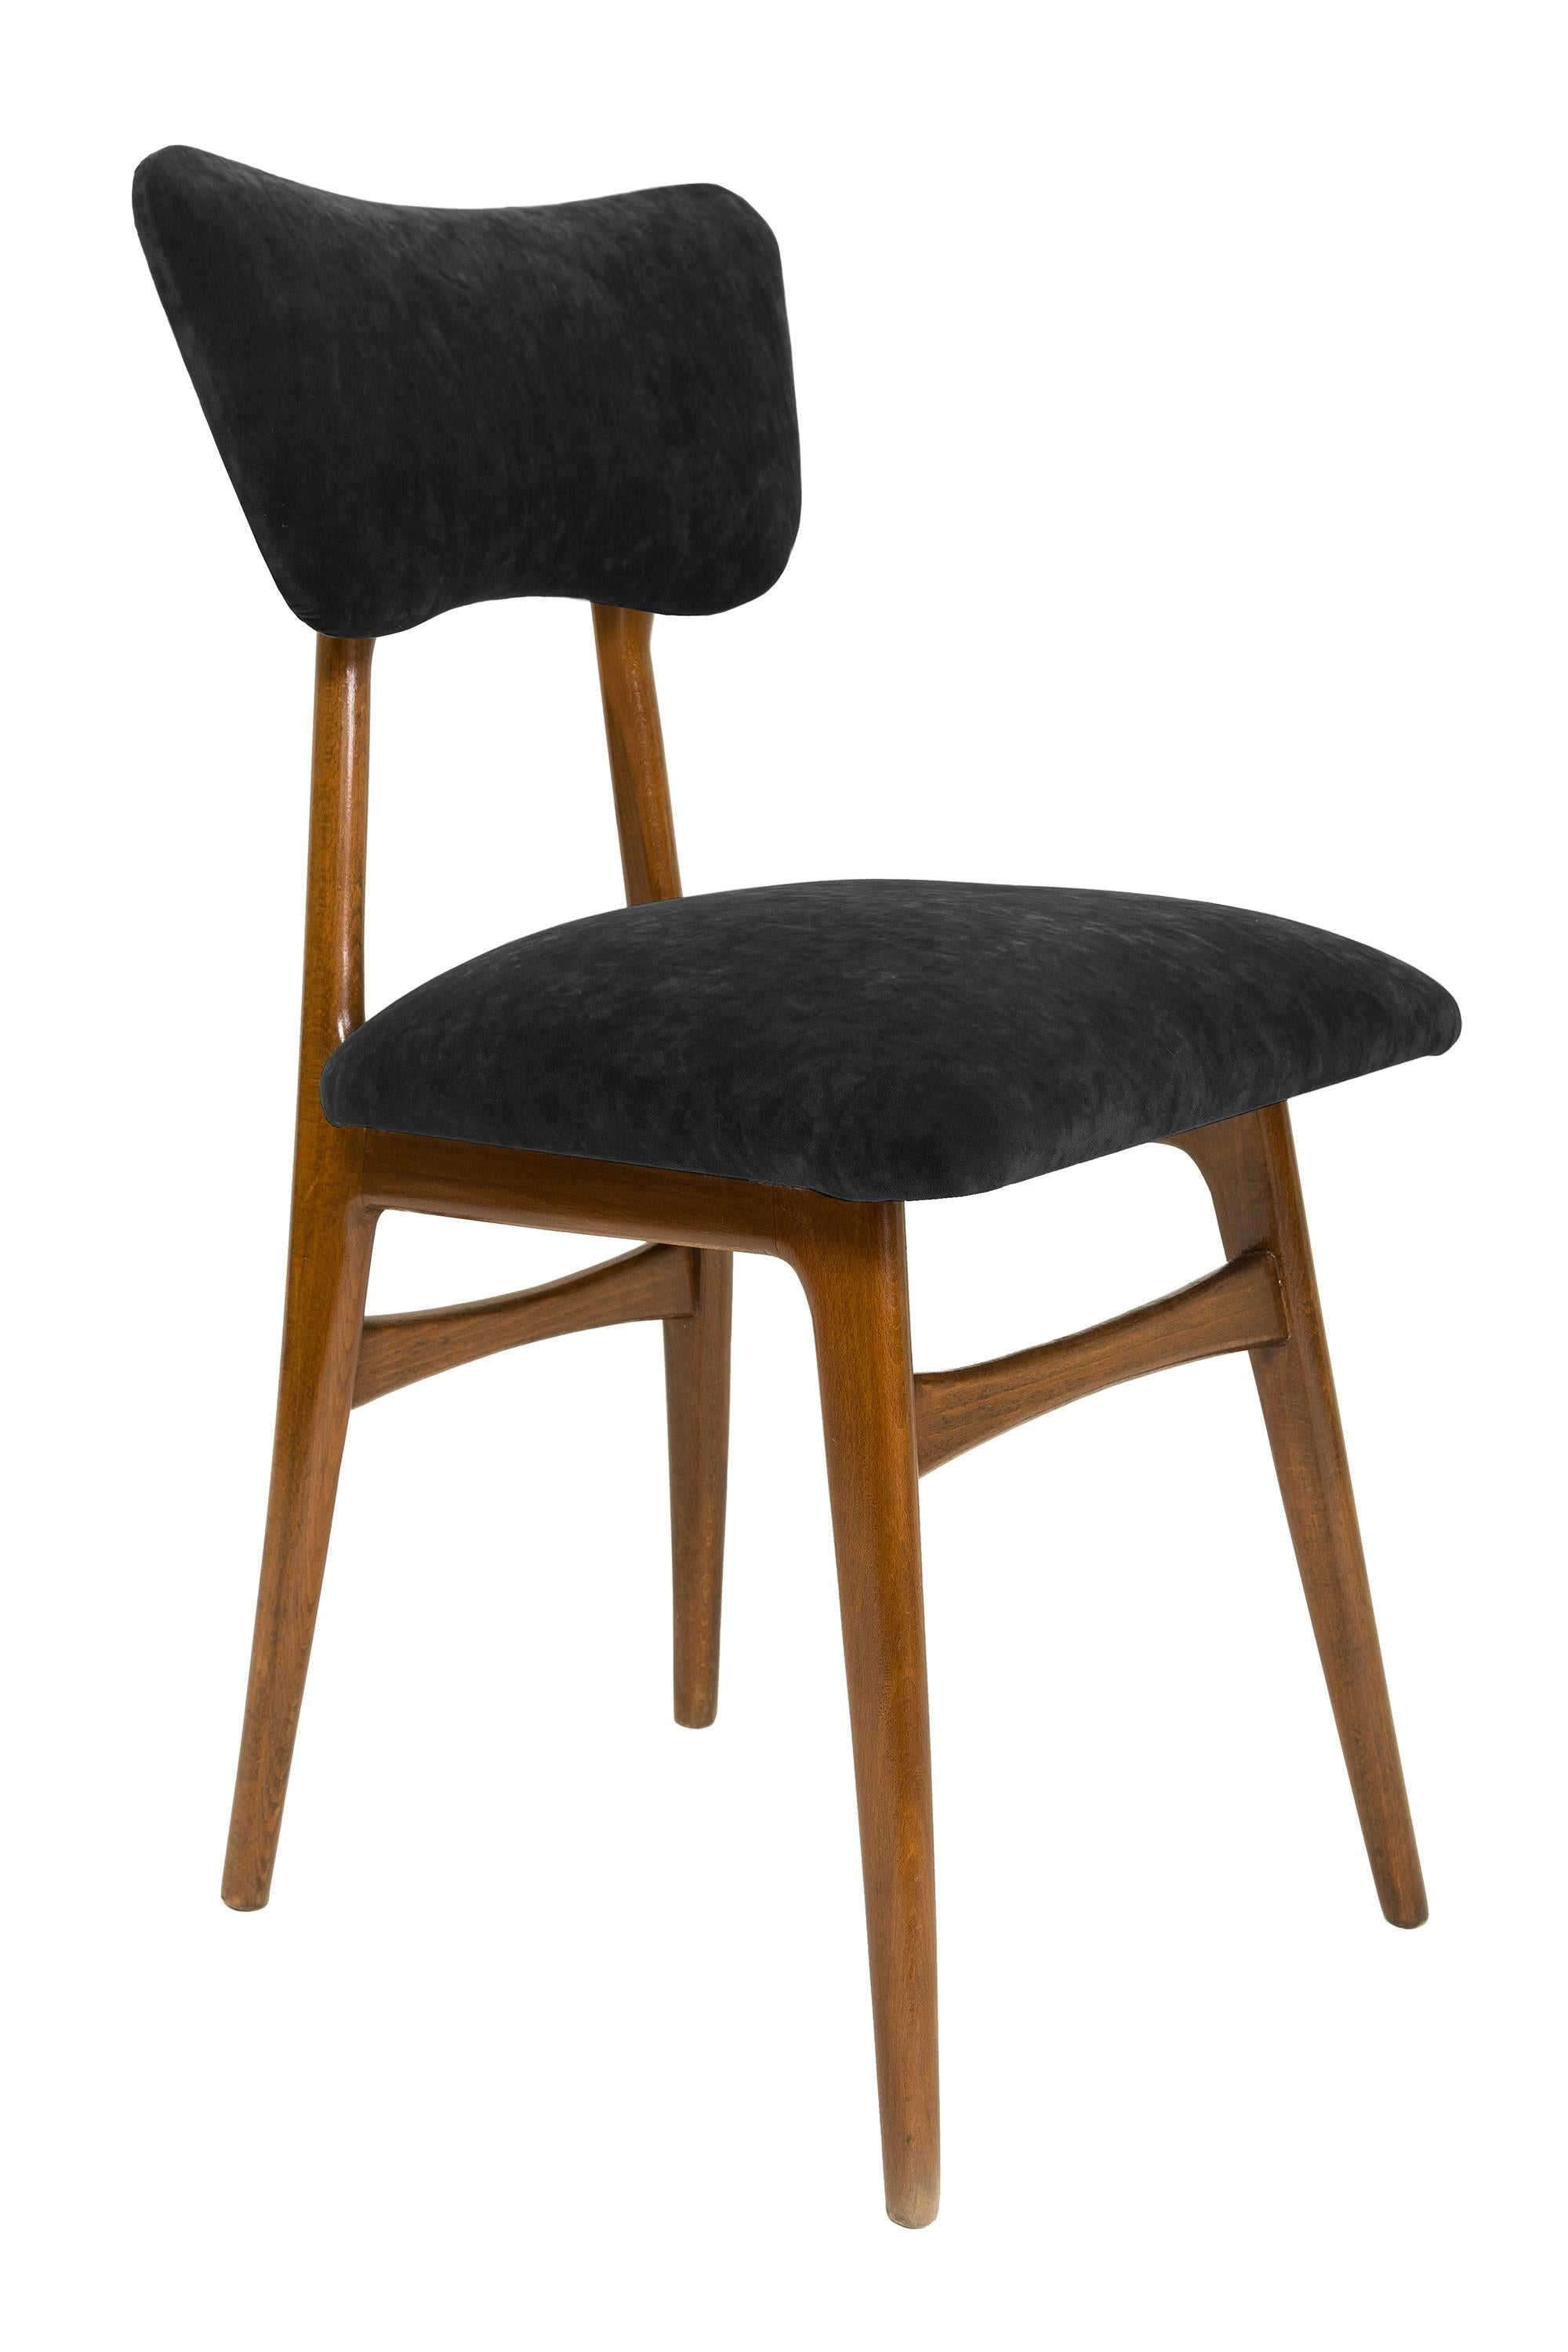 Stühle entworfen von Prof. Rajmund Halas. Hergestellt aus Buchenholz. Der Stuhl wurde komplett neu gepolstert, die Holzarbeiten wurden aufgefrischt. Sitz und Rückenlehne sind mit einem dunkelgrünen, strapazierfähigen und angenehm zu berührenden